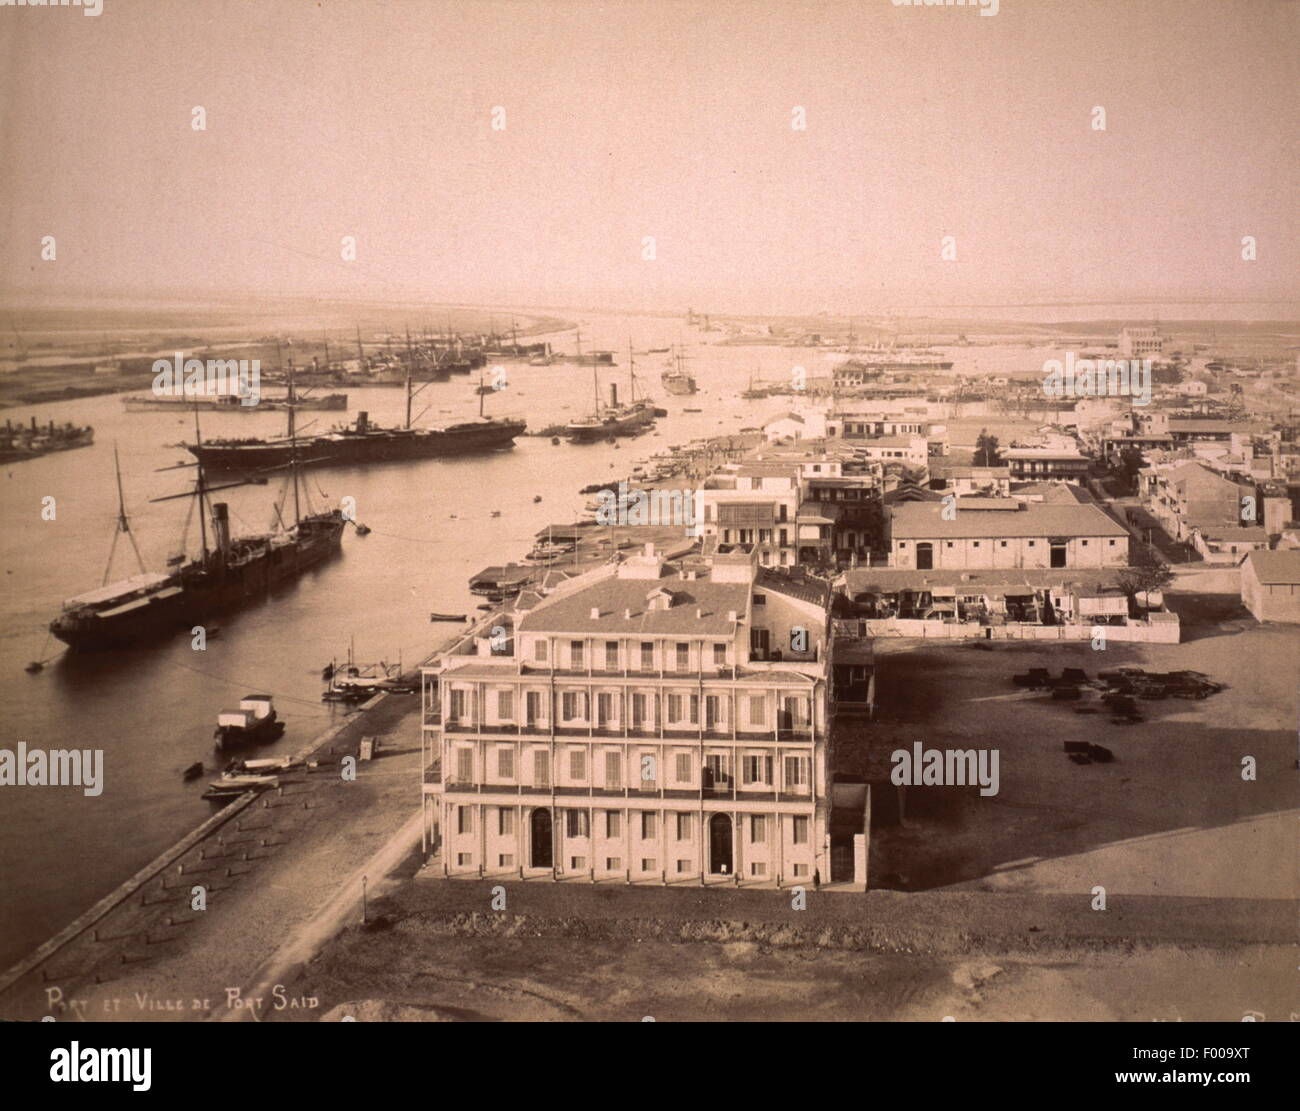 Port Said, Ägypten - 1880 s - Dampfschiffe vor Anker in Port Said, an der Mündung des Suez-Kanals am Mittelmeer, einen Blick auf den Hafen, dessen Existenz und Vermögen miteinander mit dem Suez-Kanal-Verkehr verflochten wurden. COPYRIGHT FOTOSAMMLUNG VON BARRY IVERSON Stockfoto